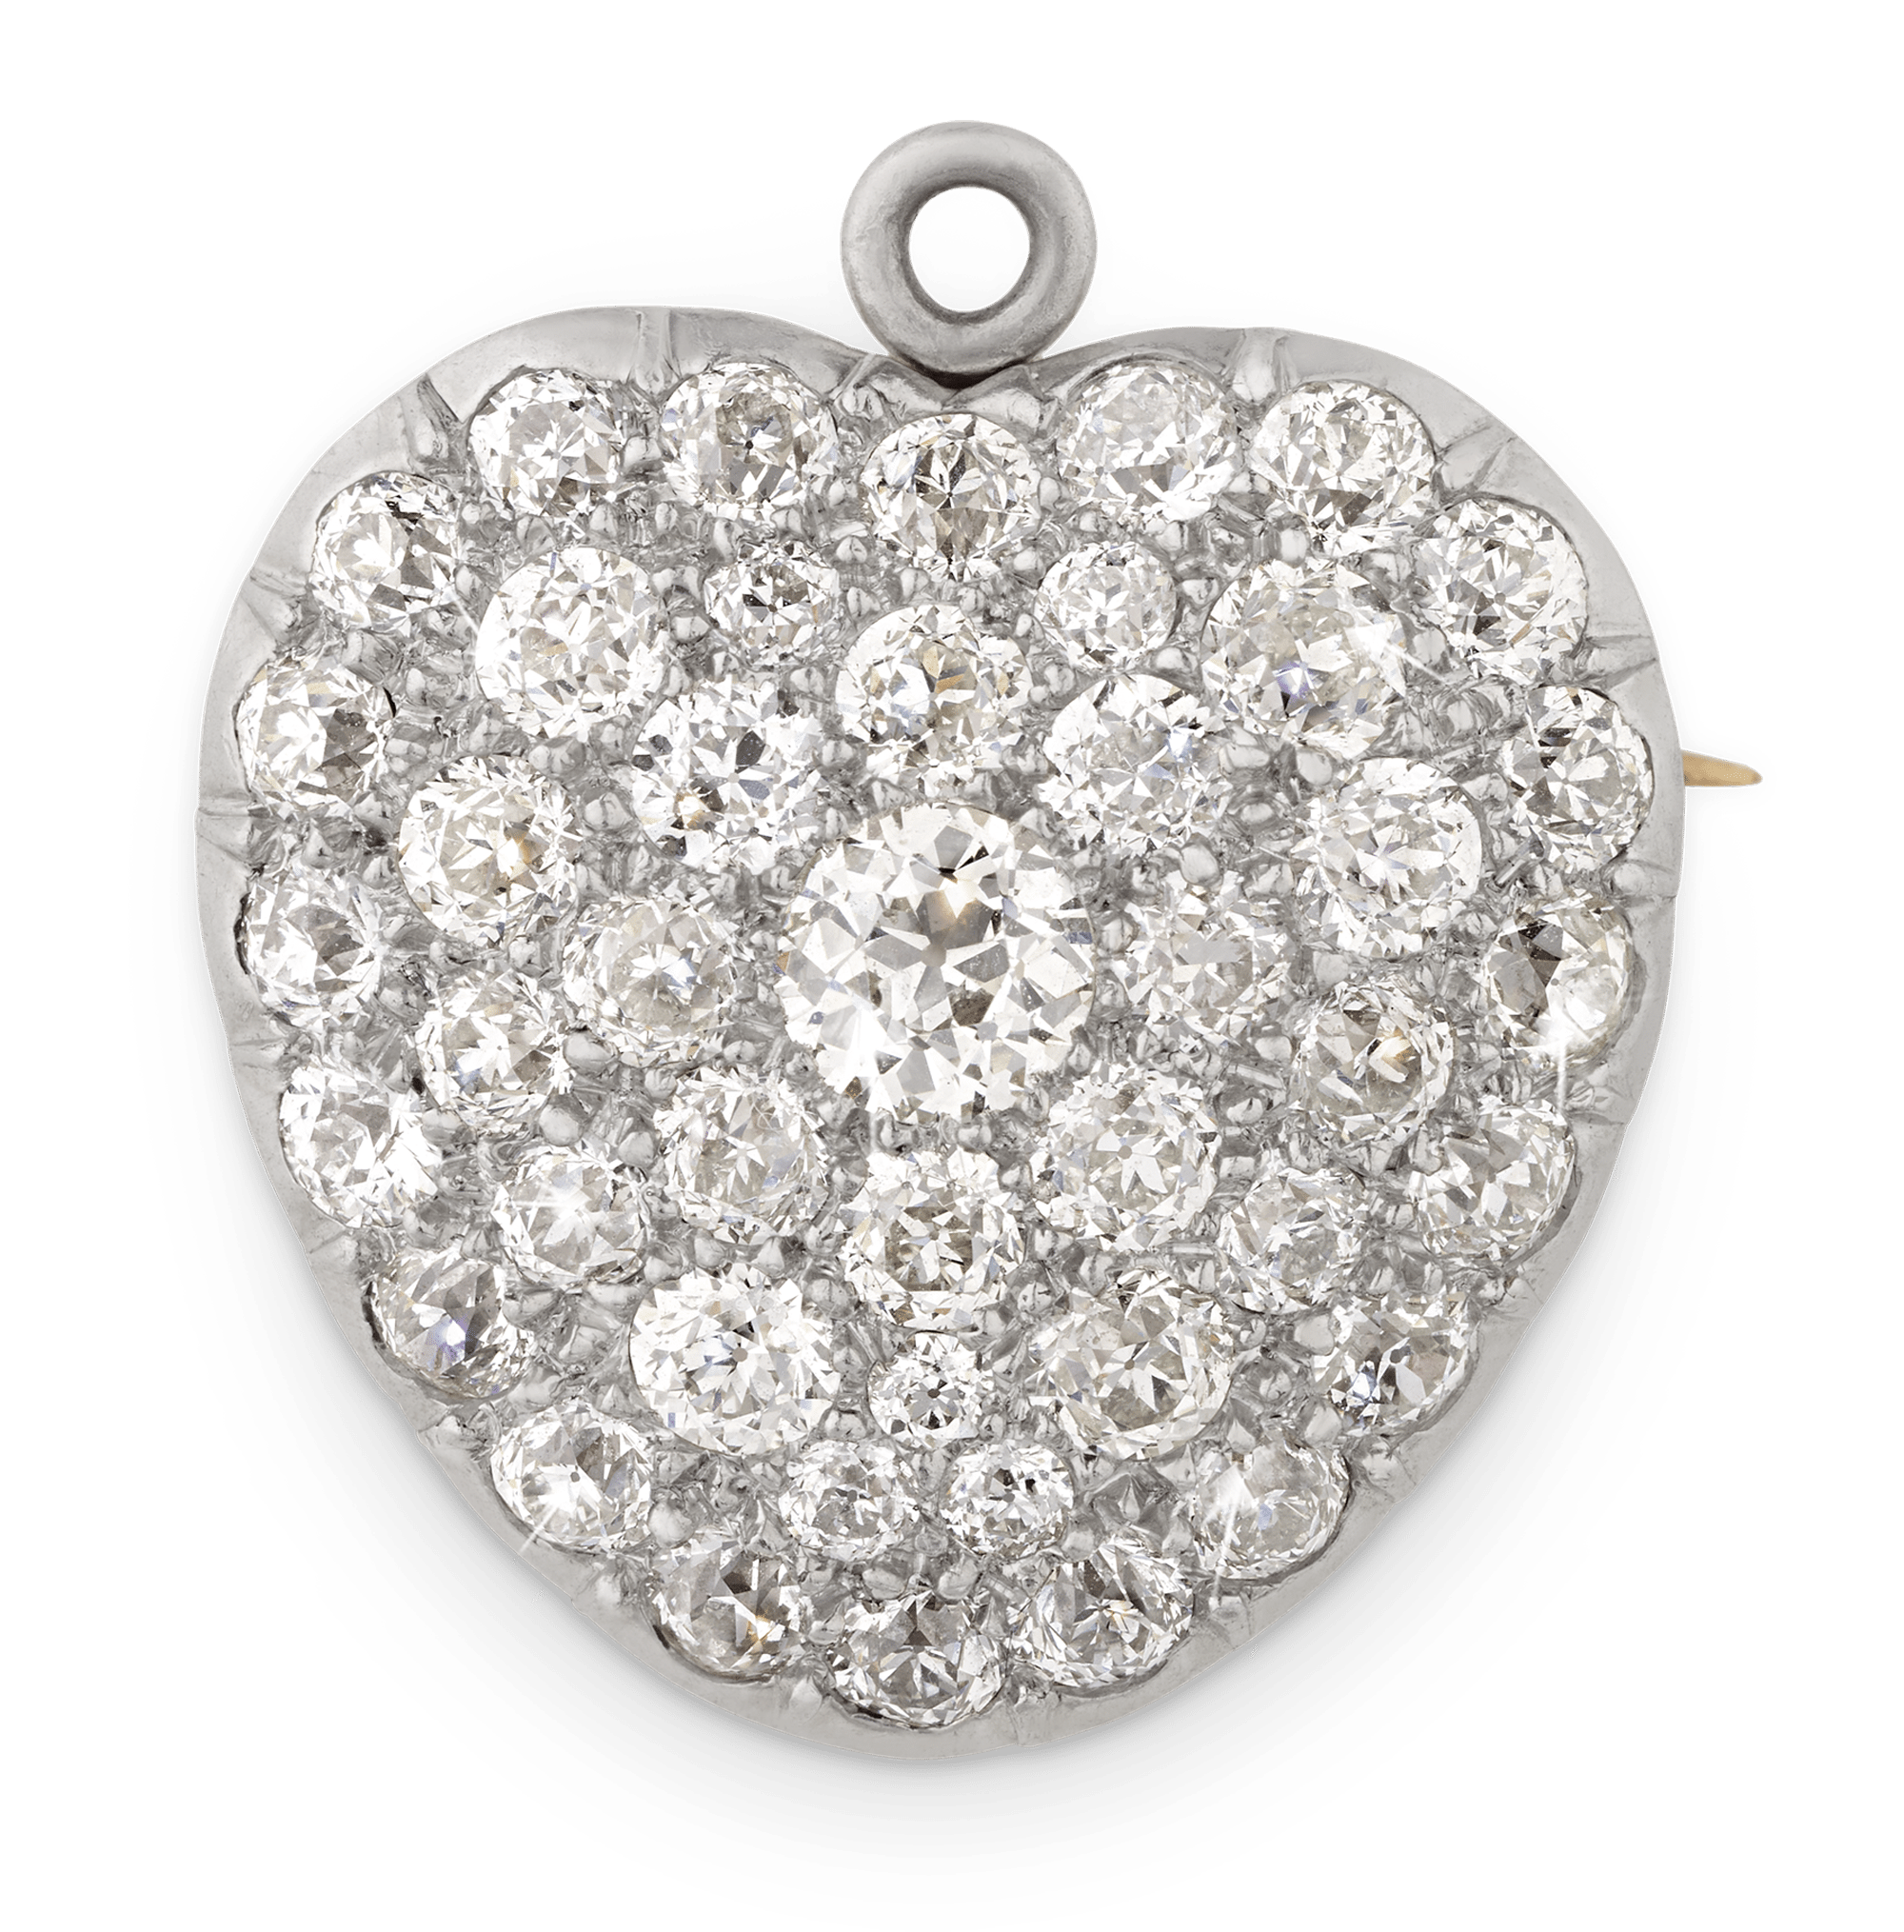 Tiffany & Co. Diamond Heart Pendant, 4.00 Carats